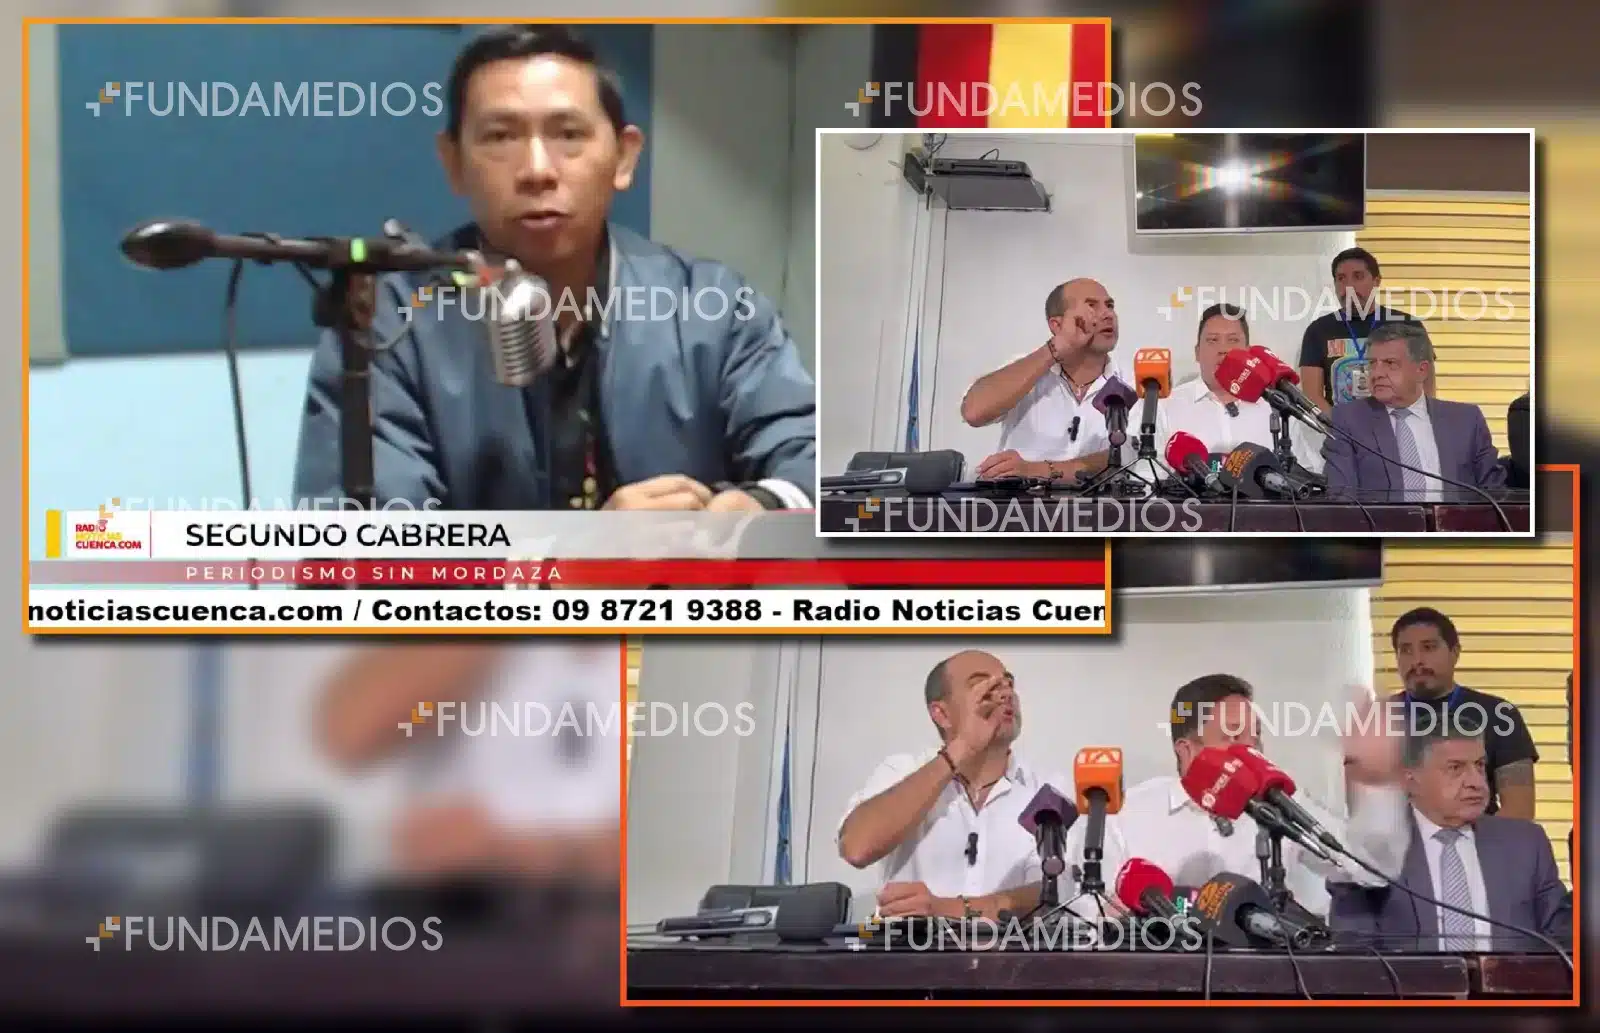 Autoridades de la provincia de Azuay, en Ecuador, insultan a periodista en plena rueda de prensa